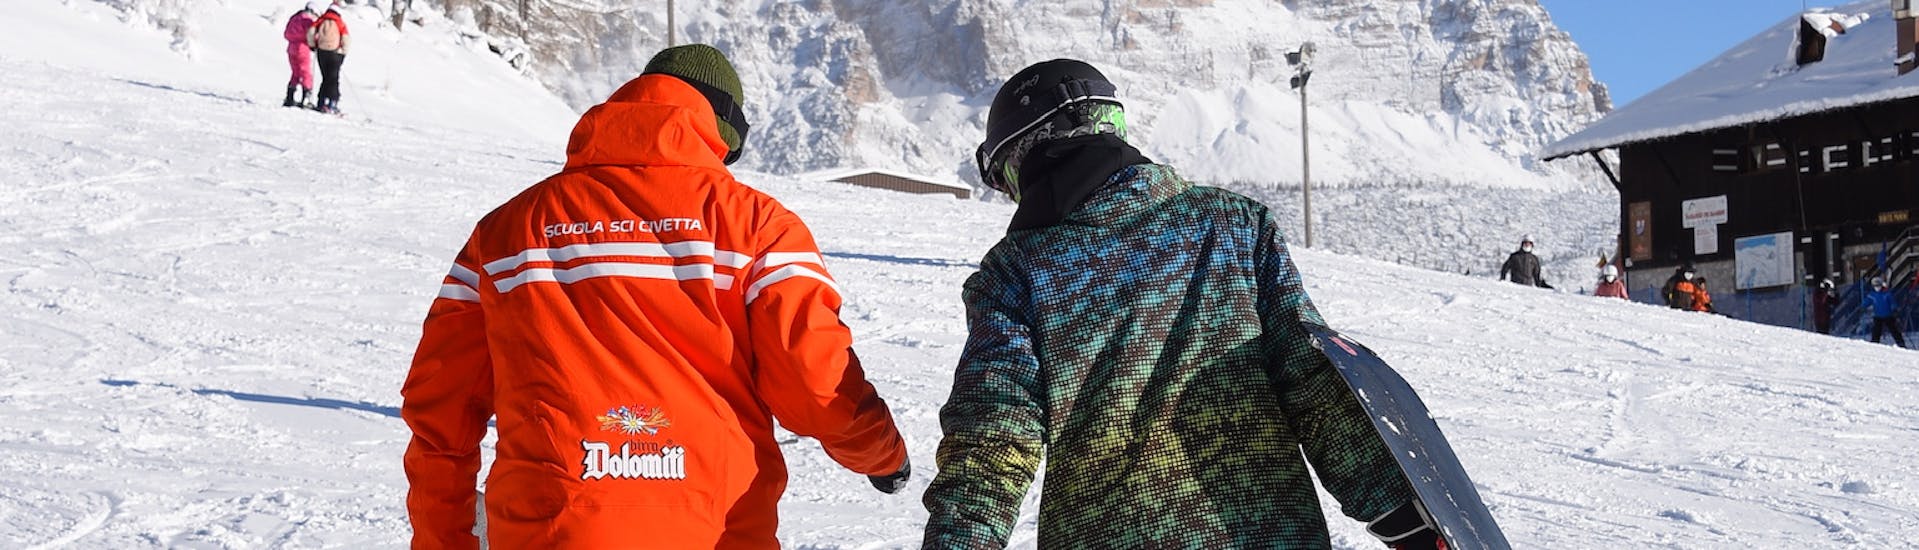 Lezioni private di snowboard per tutte le età e livelli con Scuola Sci Civetta - Val di Zoldo Pecol.